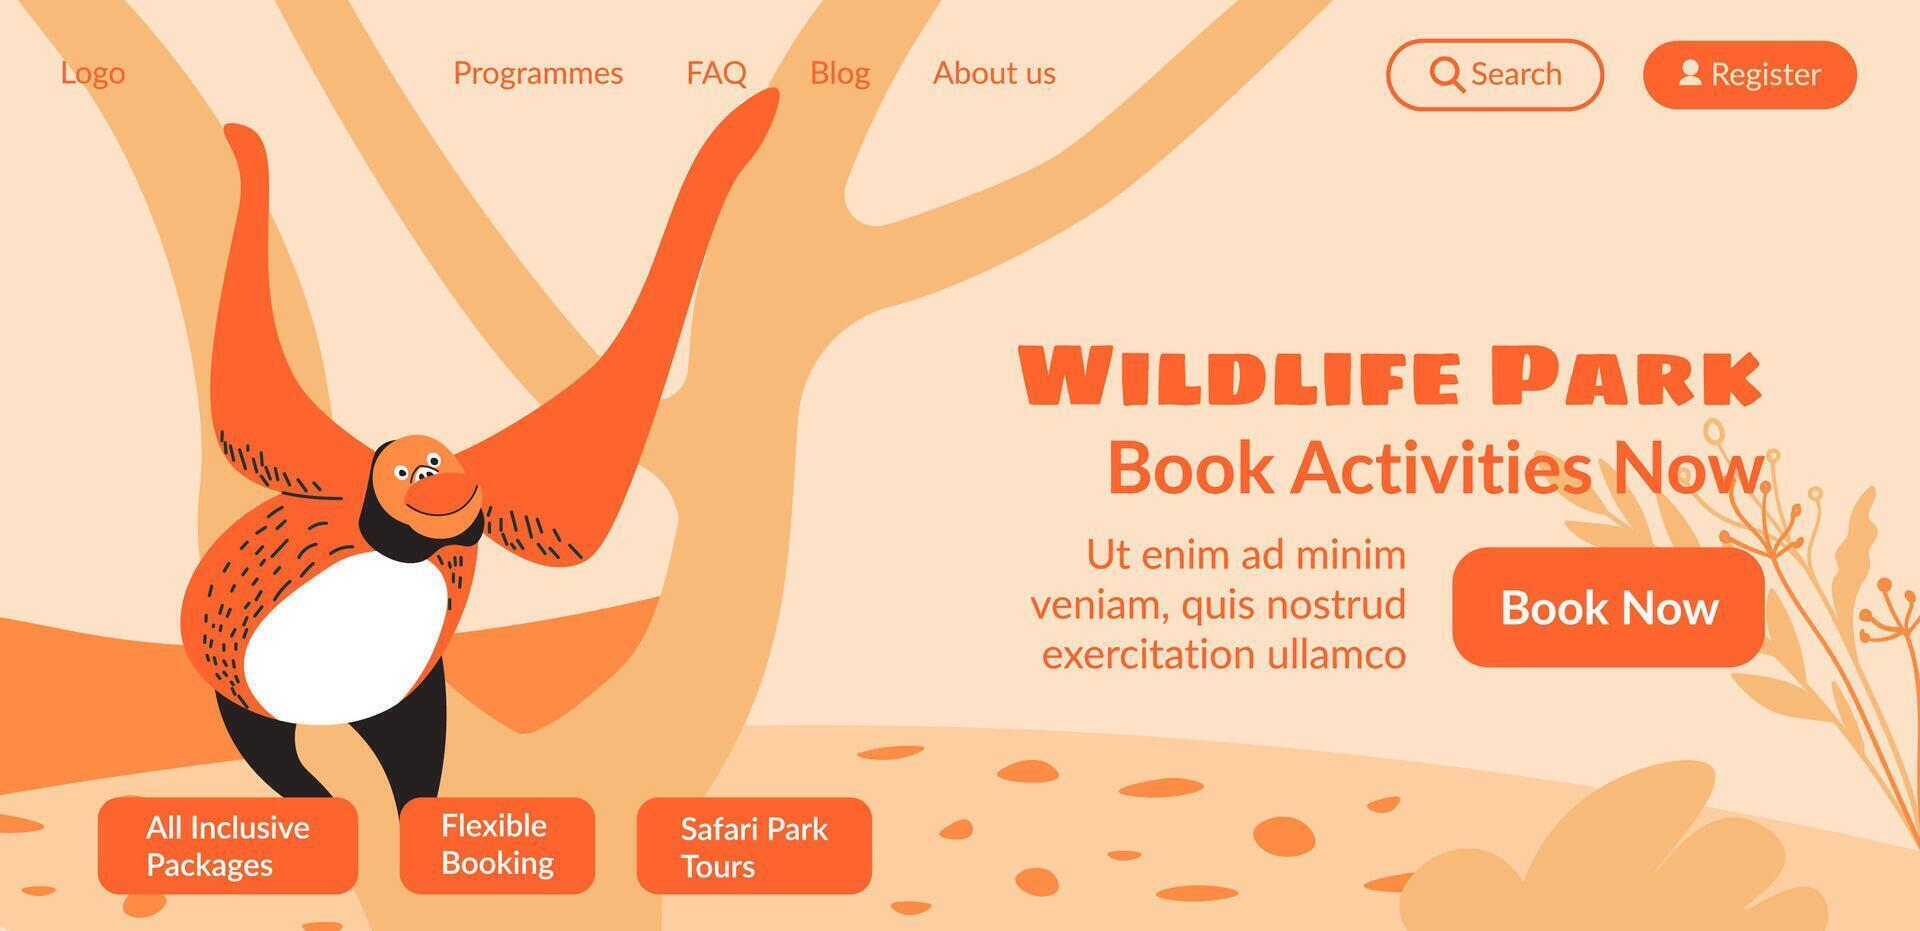 fauna silvestre parque, libro ocupaciones ahora en línea web vector